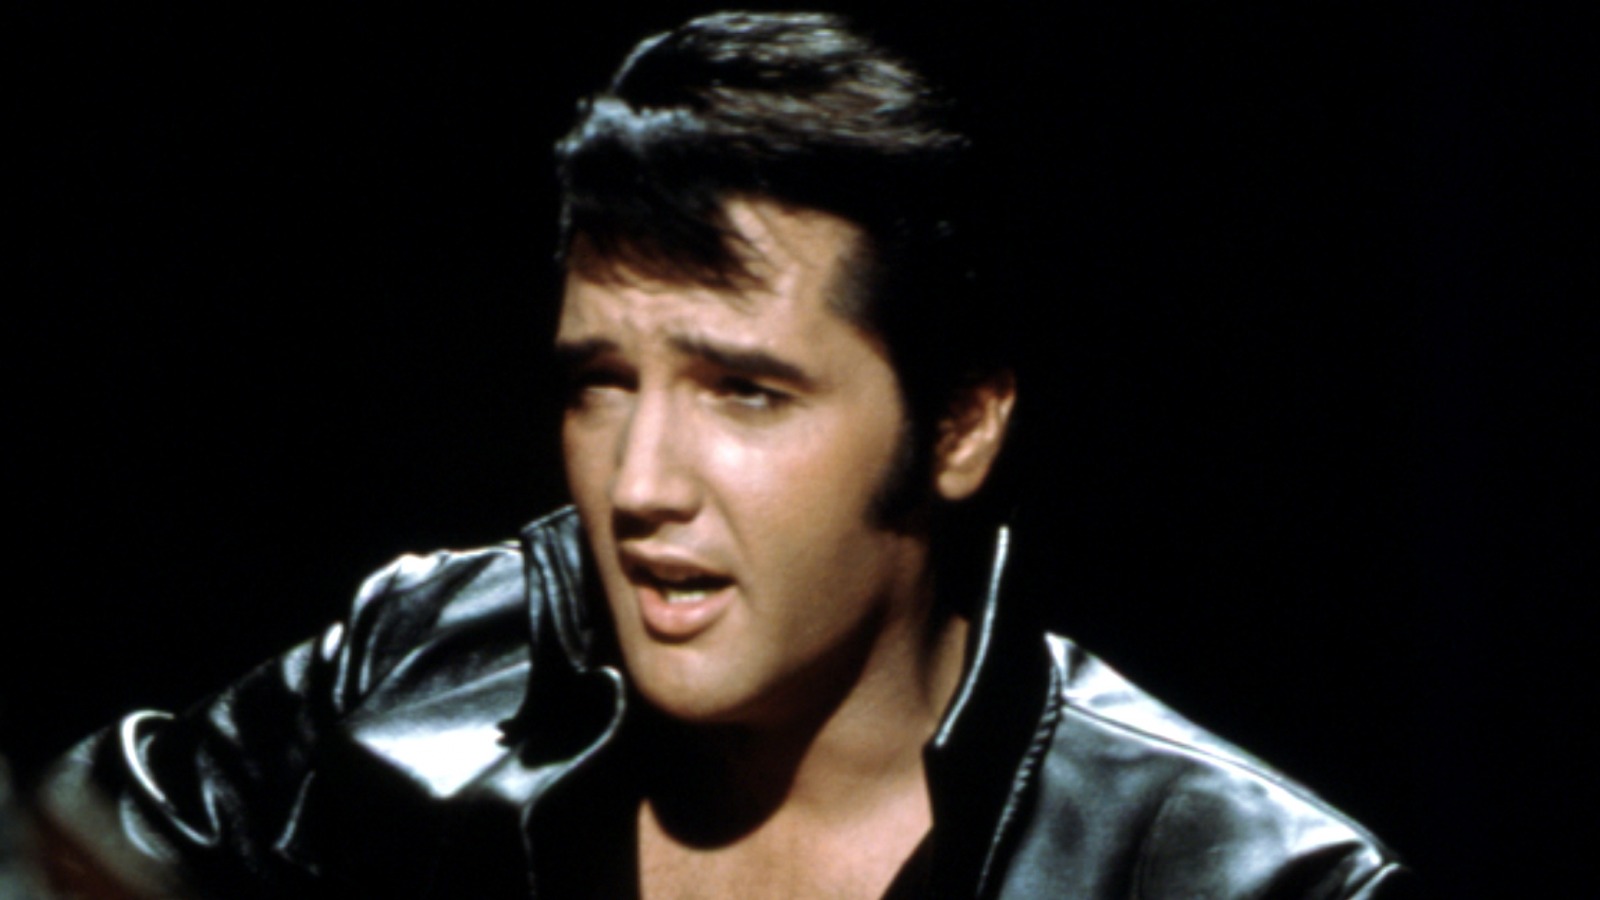 Huge scandals that rocked Elvis Presley's family